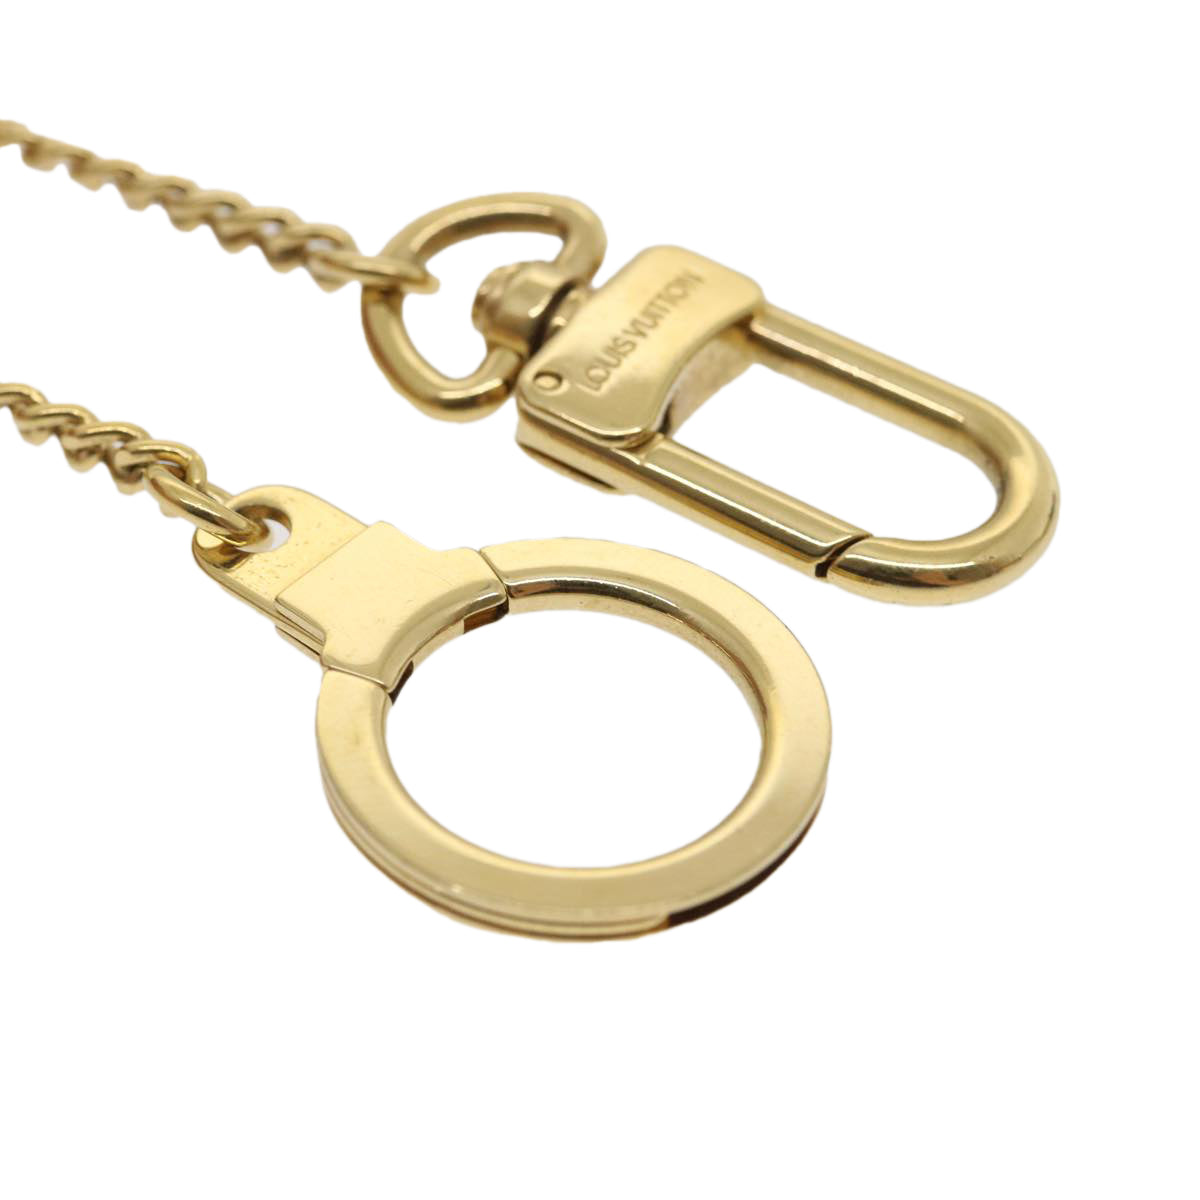 LOUIS VUITTON Chainne Anneau Cles Key Ring Gold Tone M58021 LV Auth jk1798A